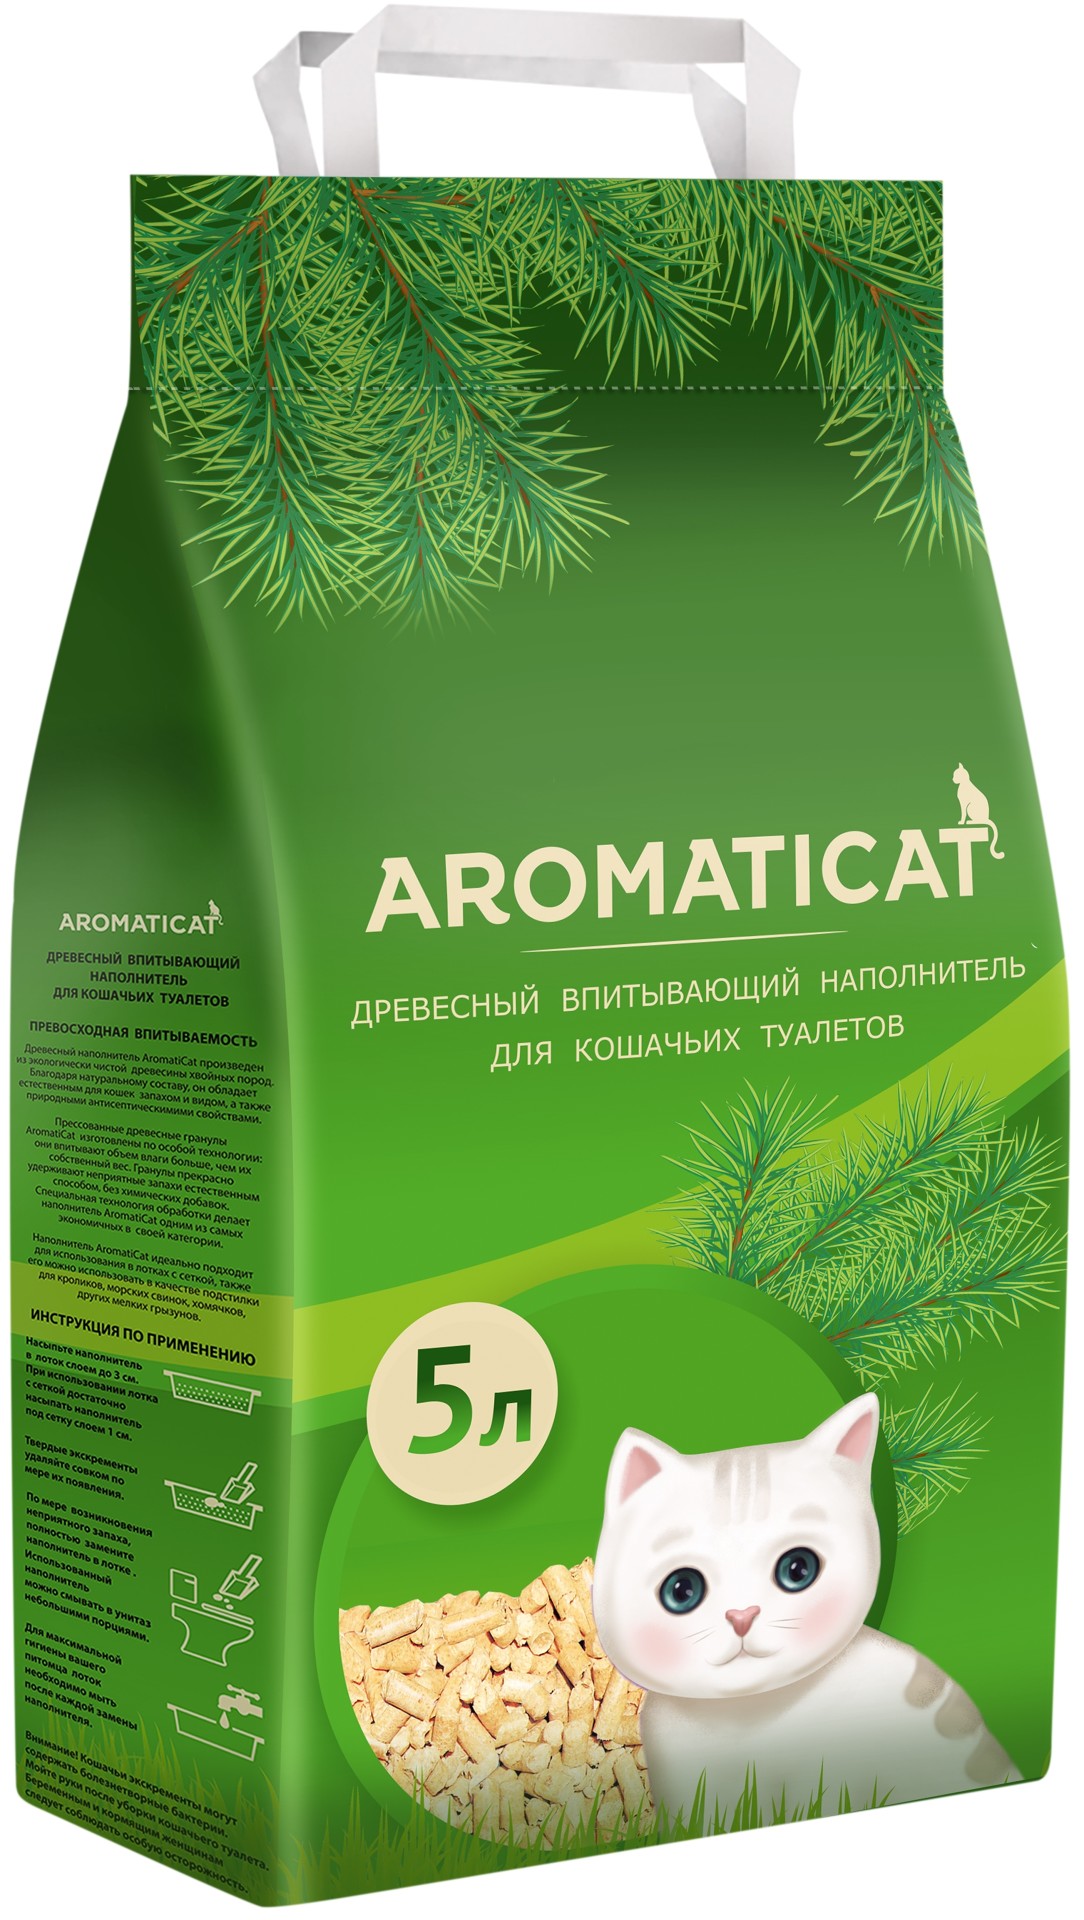 Наполнитель Aromaticat впитывающий, древесный, 3 кг, 5 л